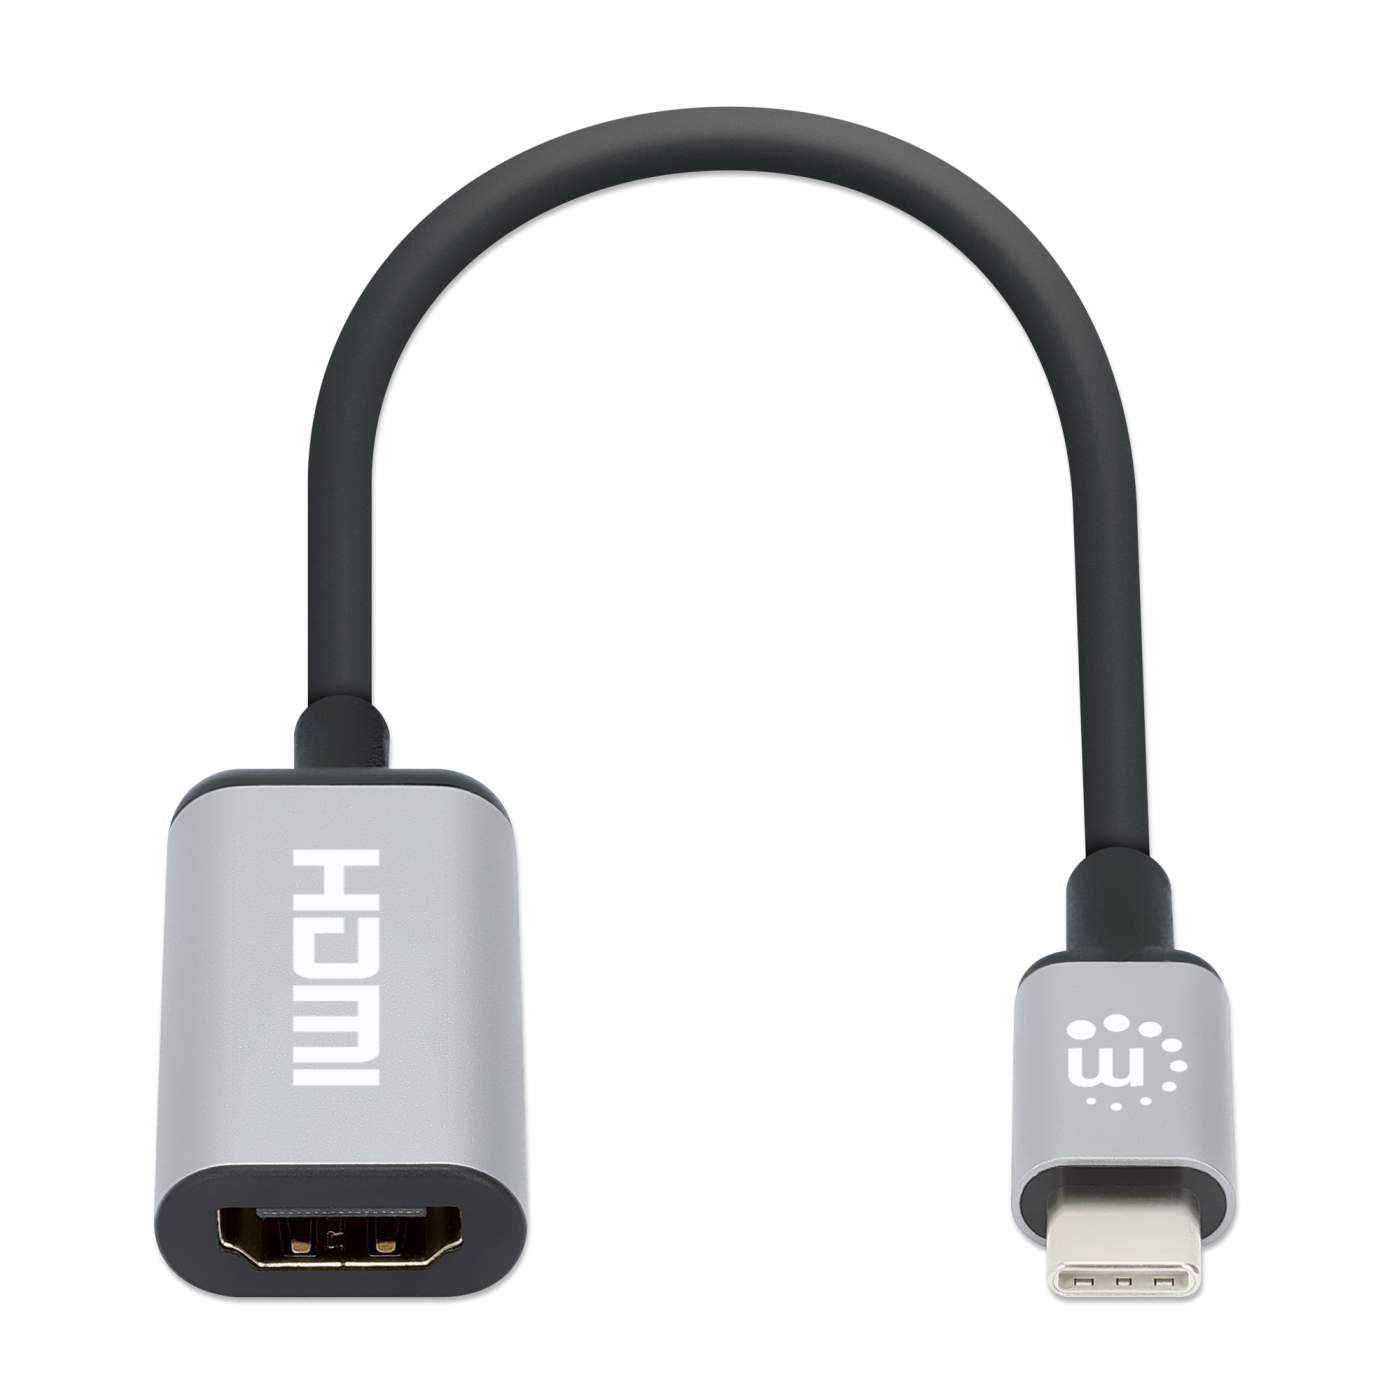 Adaptador USB C a HDMI 4K 60Hz - Tipo C - Adaptadores de vídeo USB